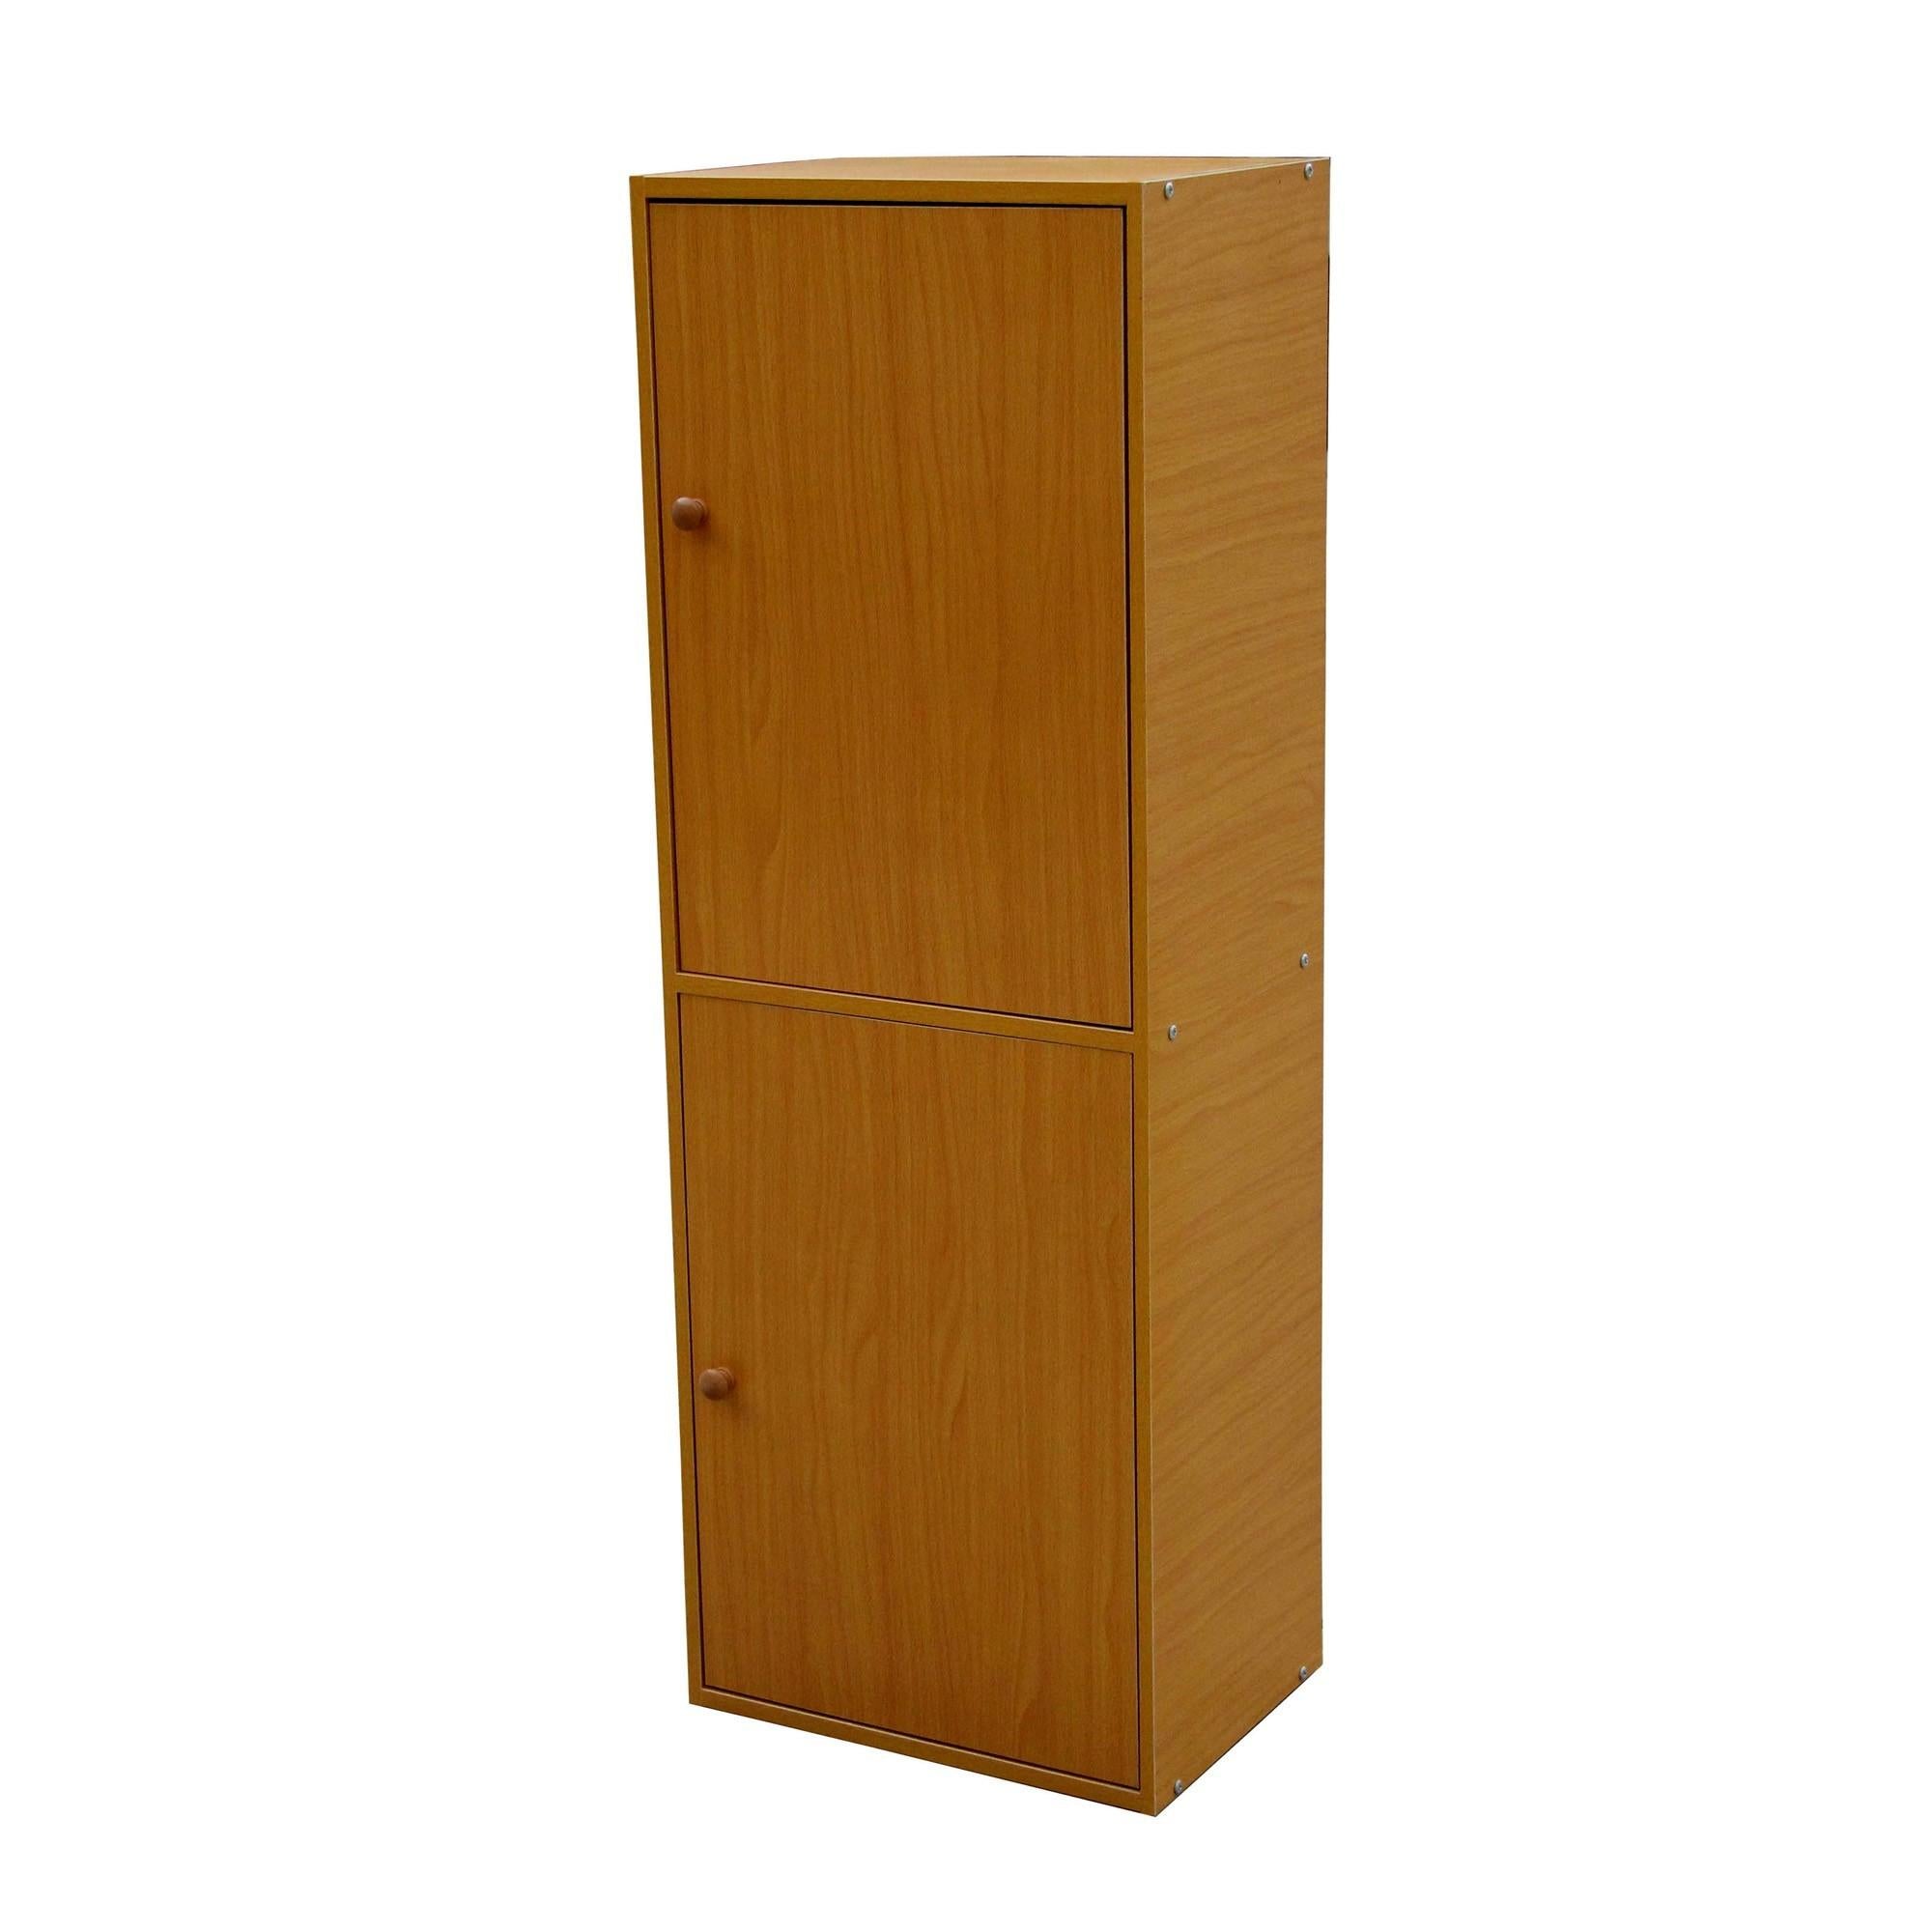 Standard Natural Two Door Verticle Adjustable Book Shelf